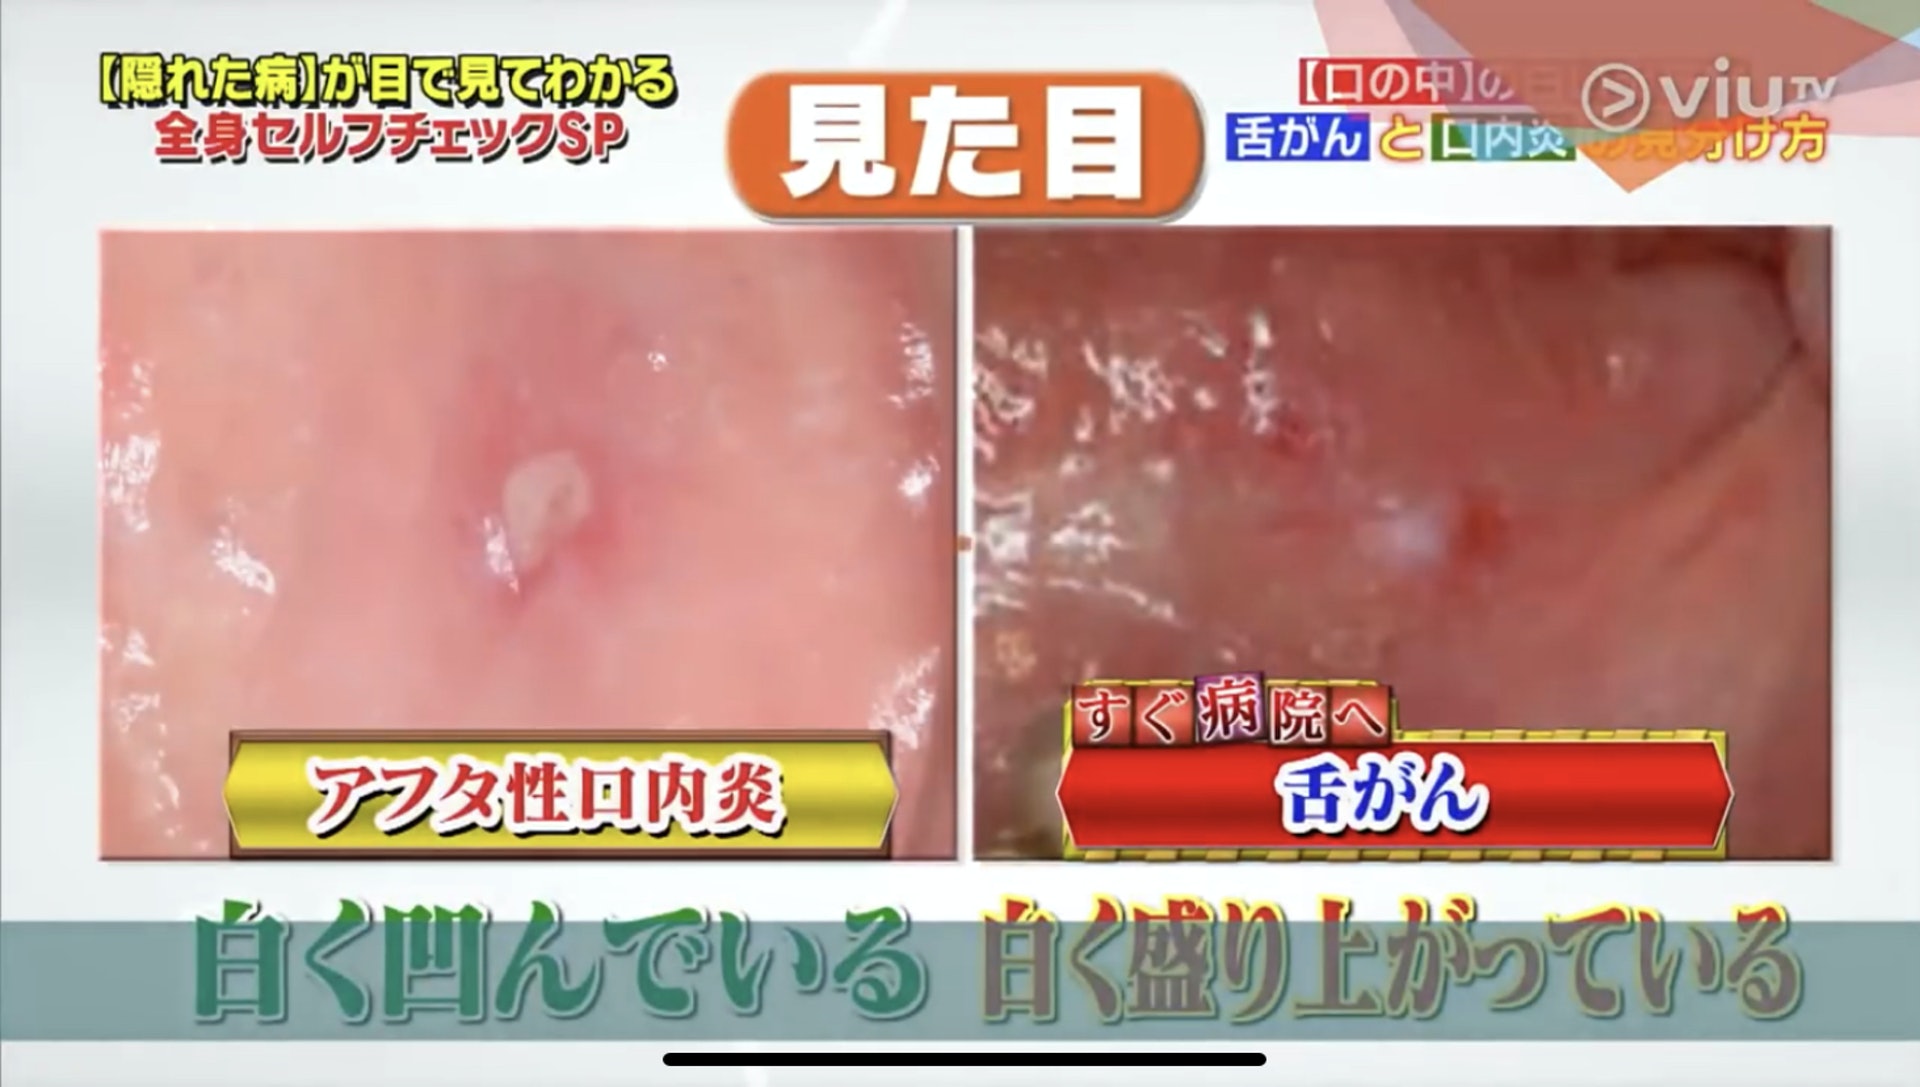 口腔炎造成的瘡，中央一般是凹下去；癌細胞則相反，中央會隆起。（Viu TV《恐怖醫學》影片截圖）